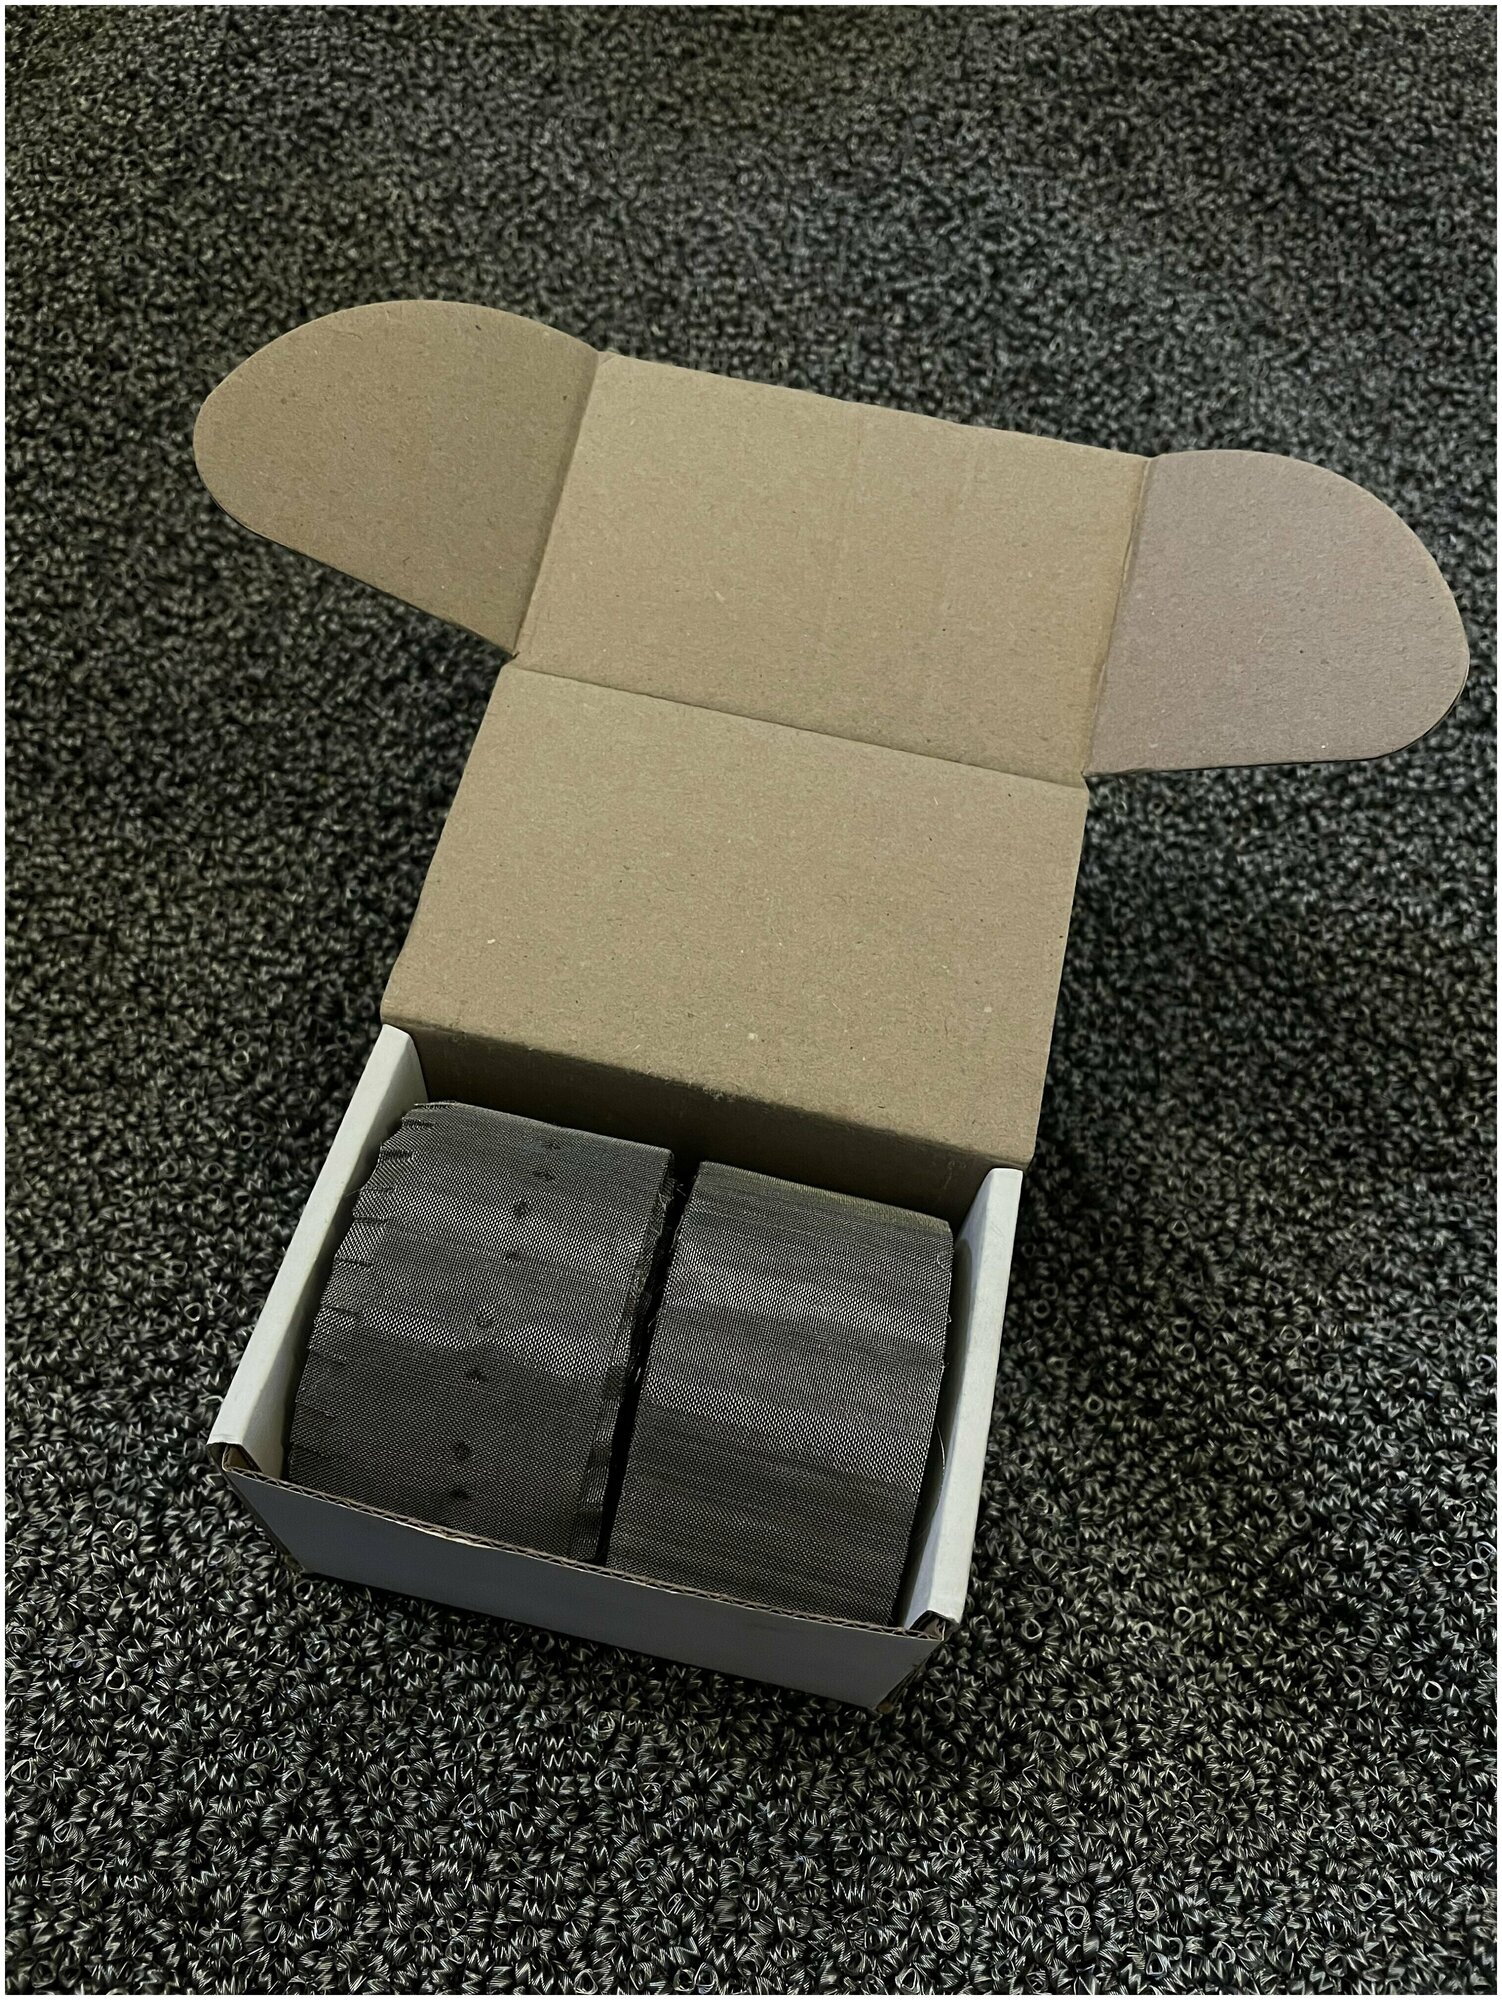 Комплект опорных пыжей Селиваненко для СПН насадки в царгу 3" дюйма нержавеющий фиксатор, концентратор флегмы (73,2 мм)